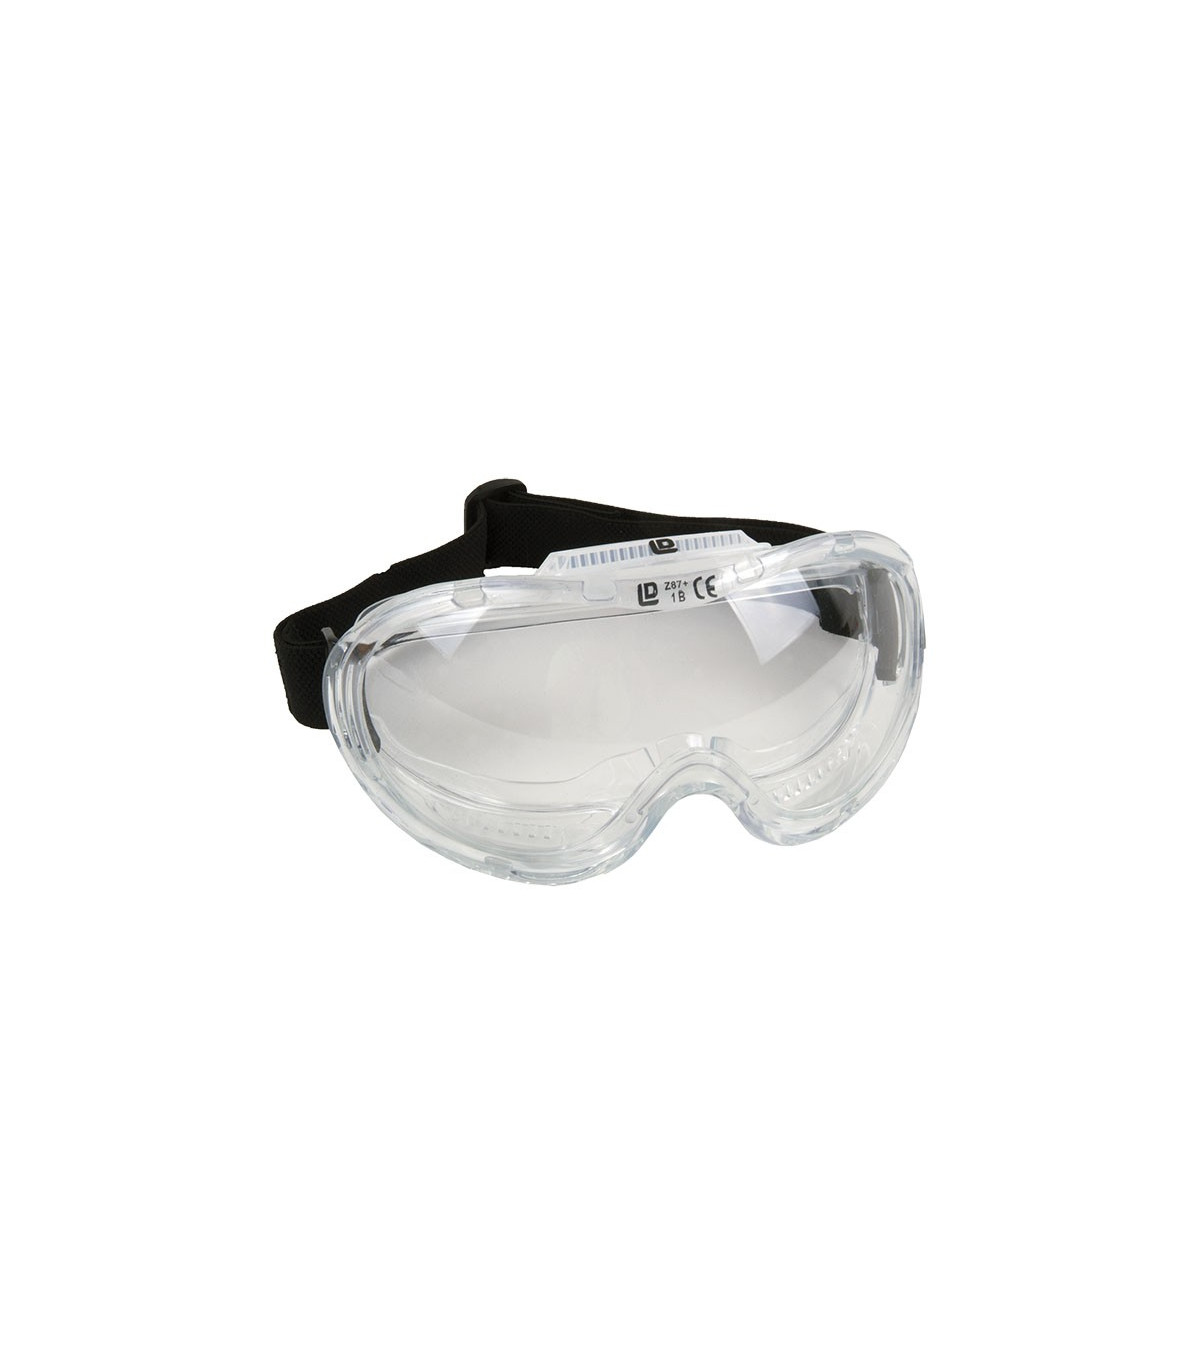 Gafas Seguridad Visión Panorámica, transparentes con ajuste elástico.  UNE-EN 166 skrc, comprar online